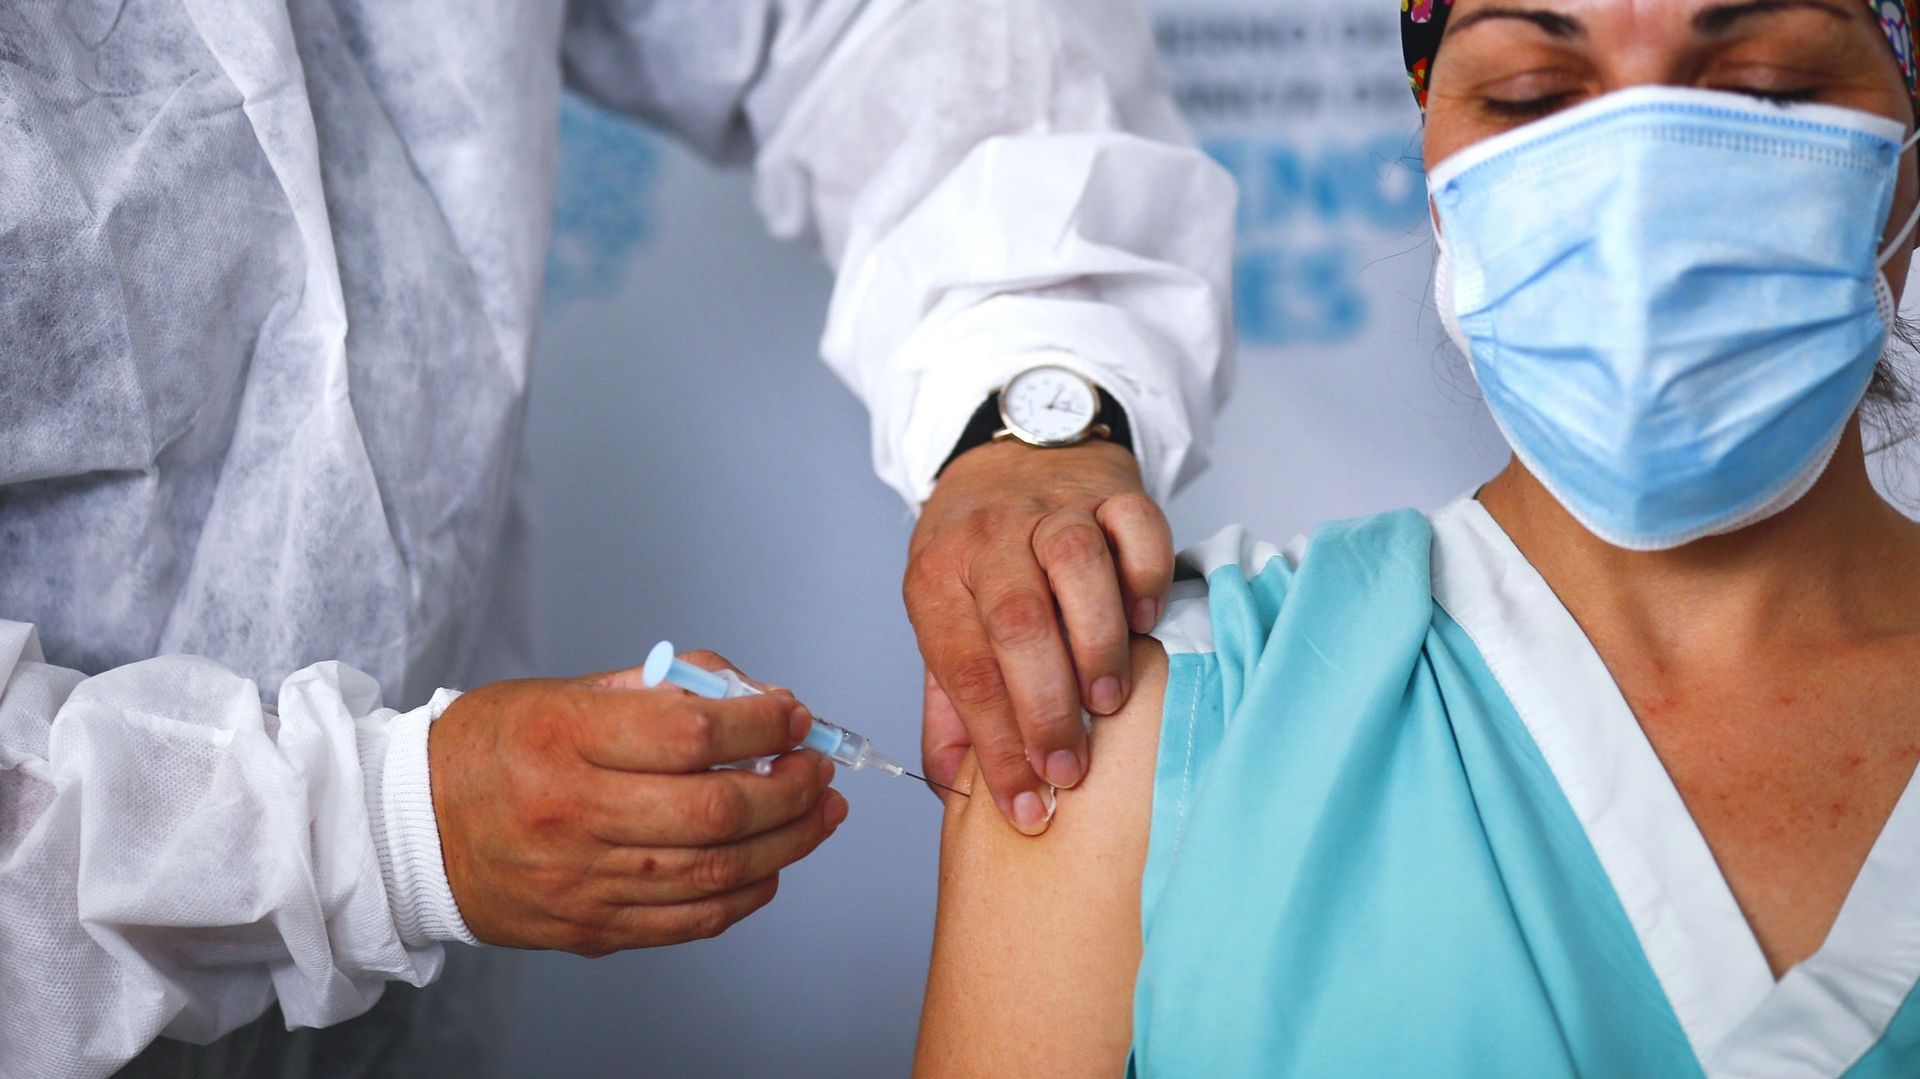 Employeurs et syndicats critiques sur la vaccination obligatoire dans le secteur santé